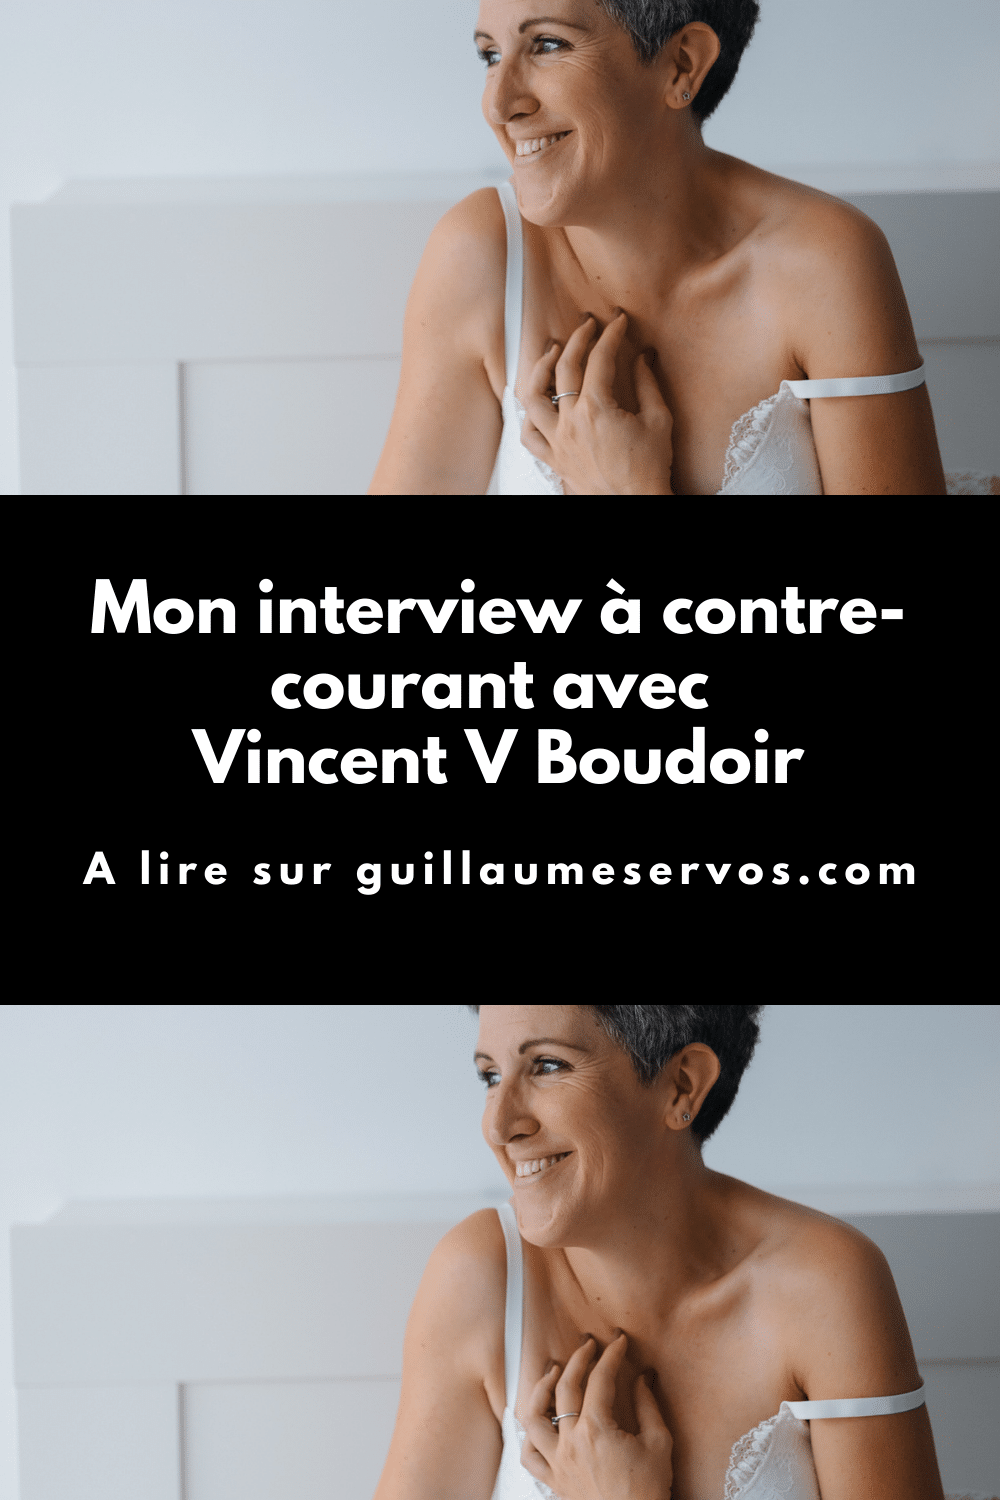 Découvre mon interview avec Vincent V Boudoir, photographe professionnel spécialisé dans le portrait intime. Son rapport à la photographie, aux réseaux sociaux et au voyage.